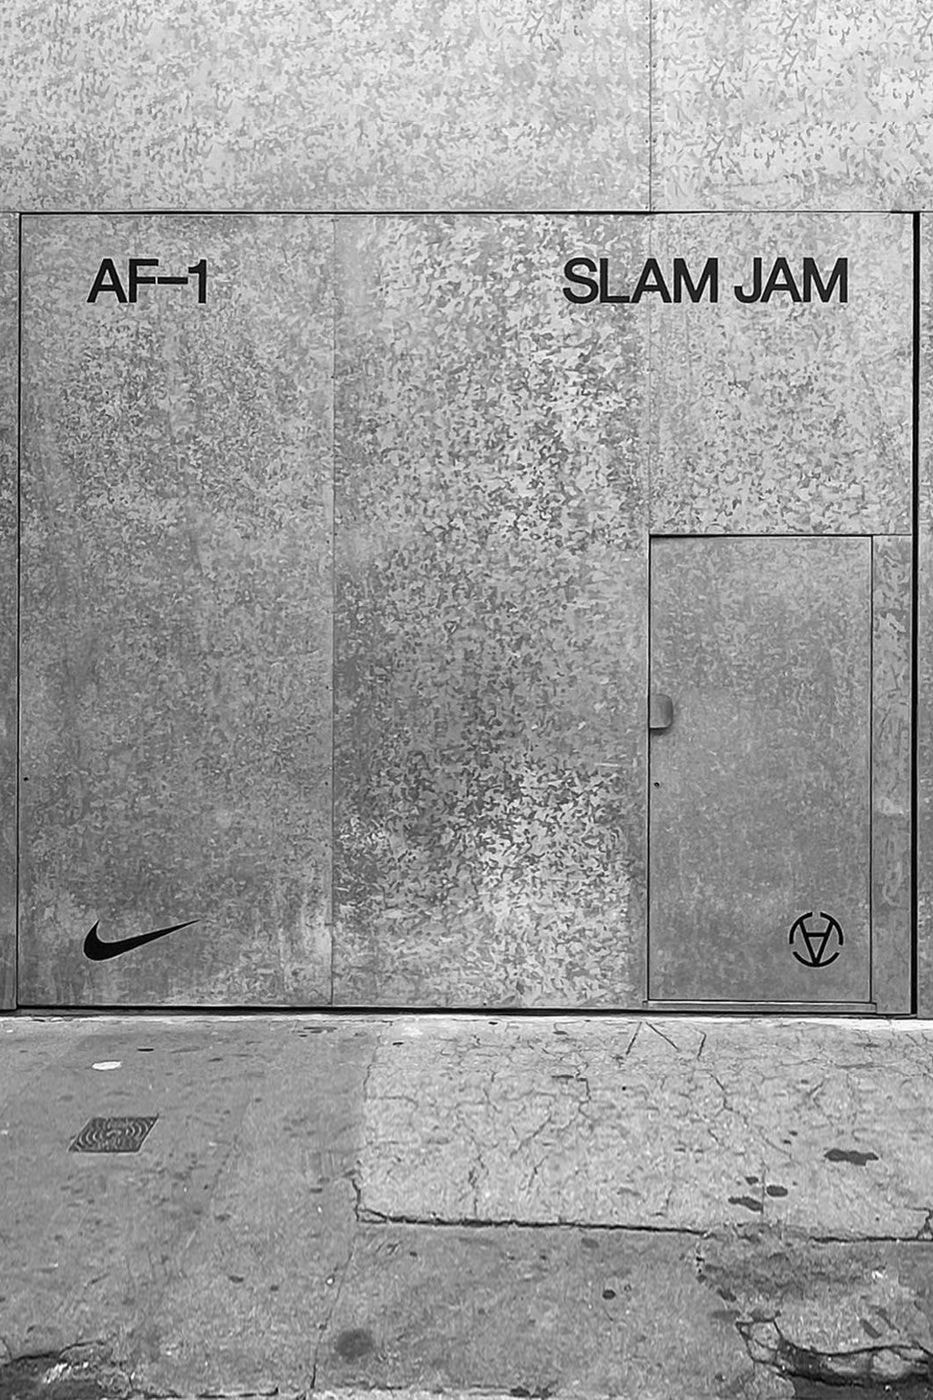 走進 Slam Jam x Nike Air Force 1 合作紀念展覽